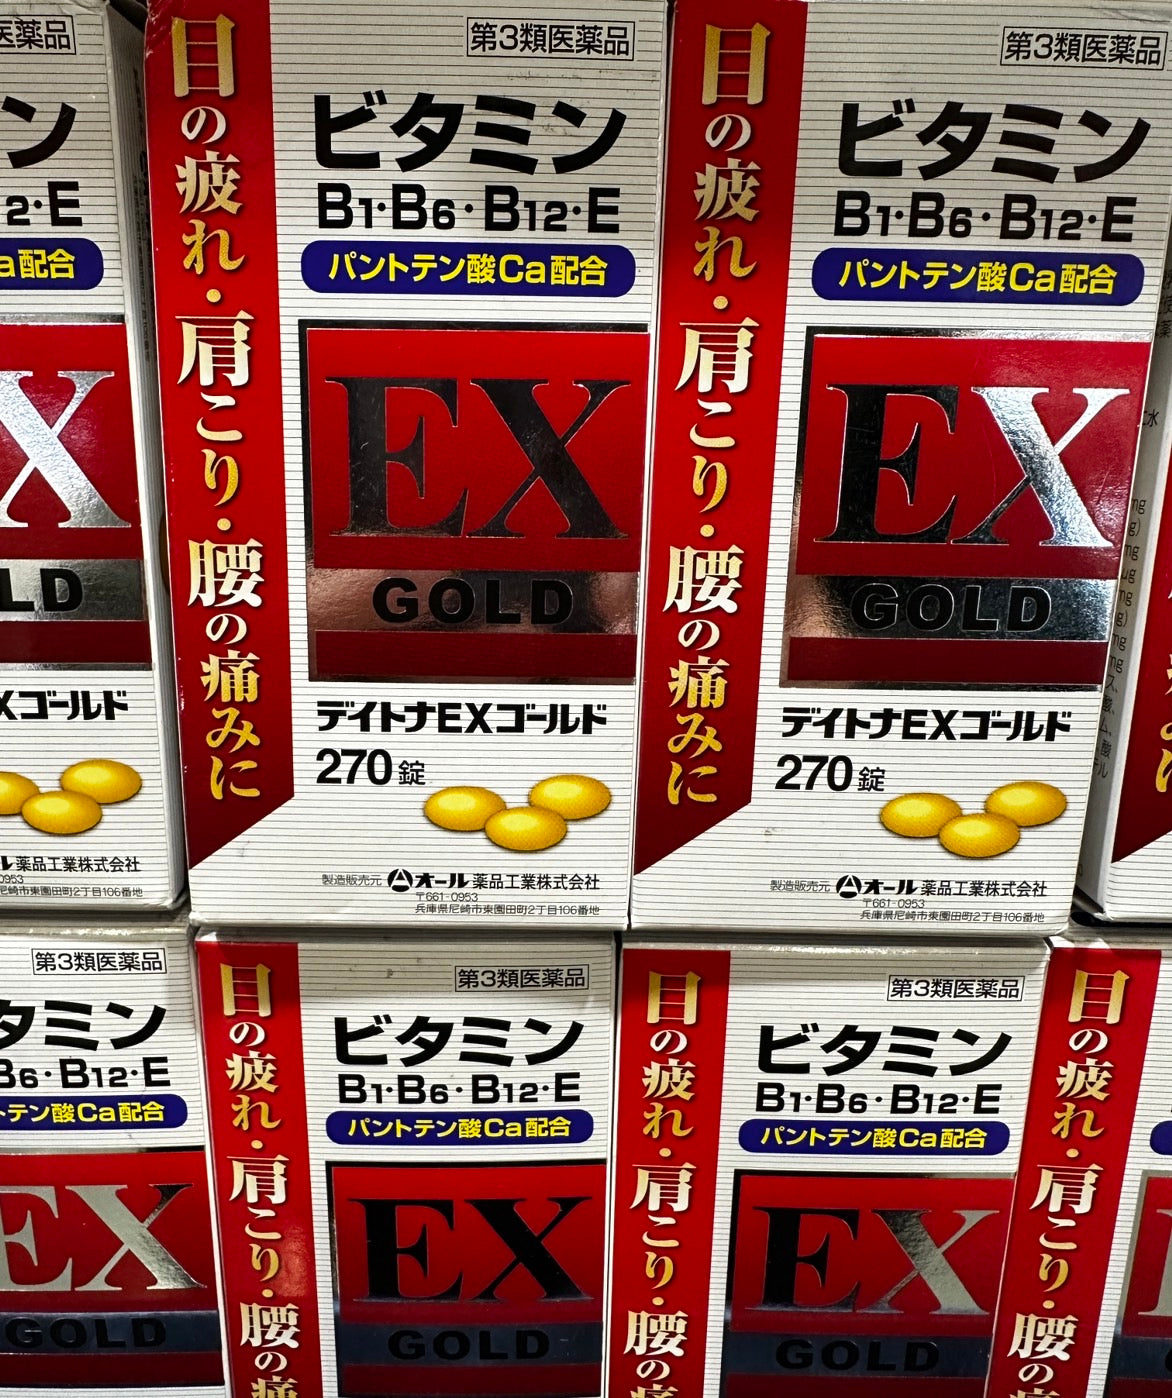 日本ALL藥品工業-DAYTONA EX GOLD B群強效錠 B1.B6.B12.E